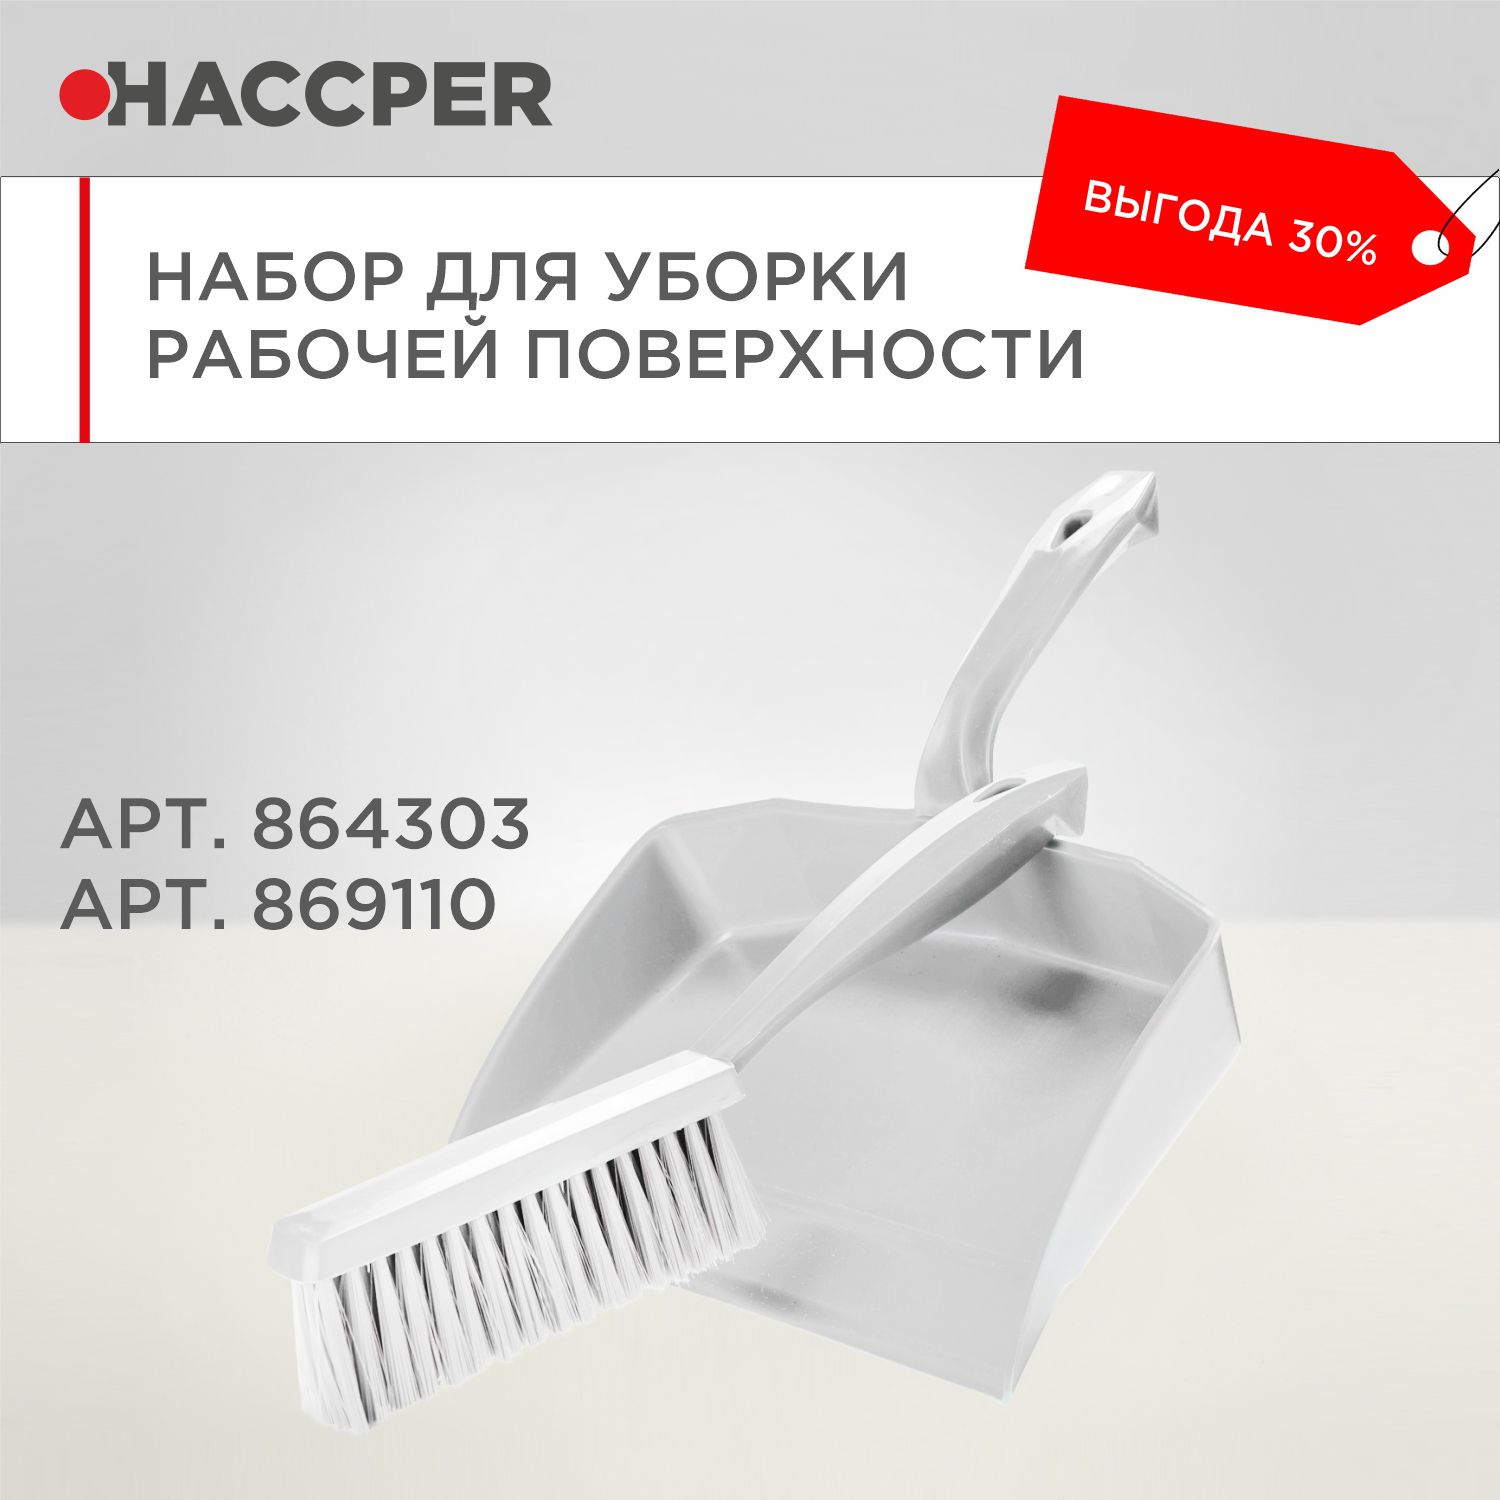 Набор для уборки рабочих поверхностей HACCPER, белый